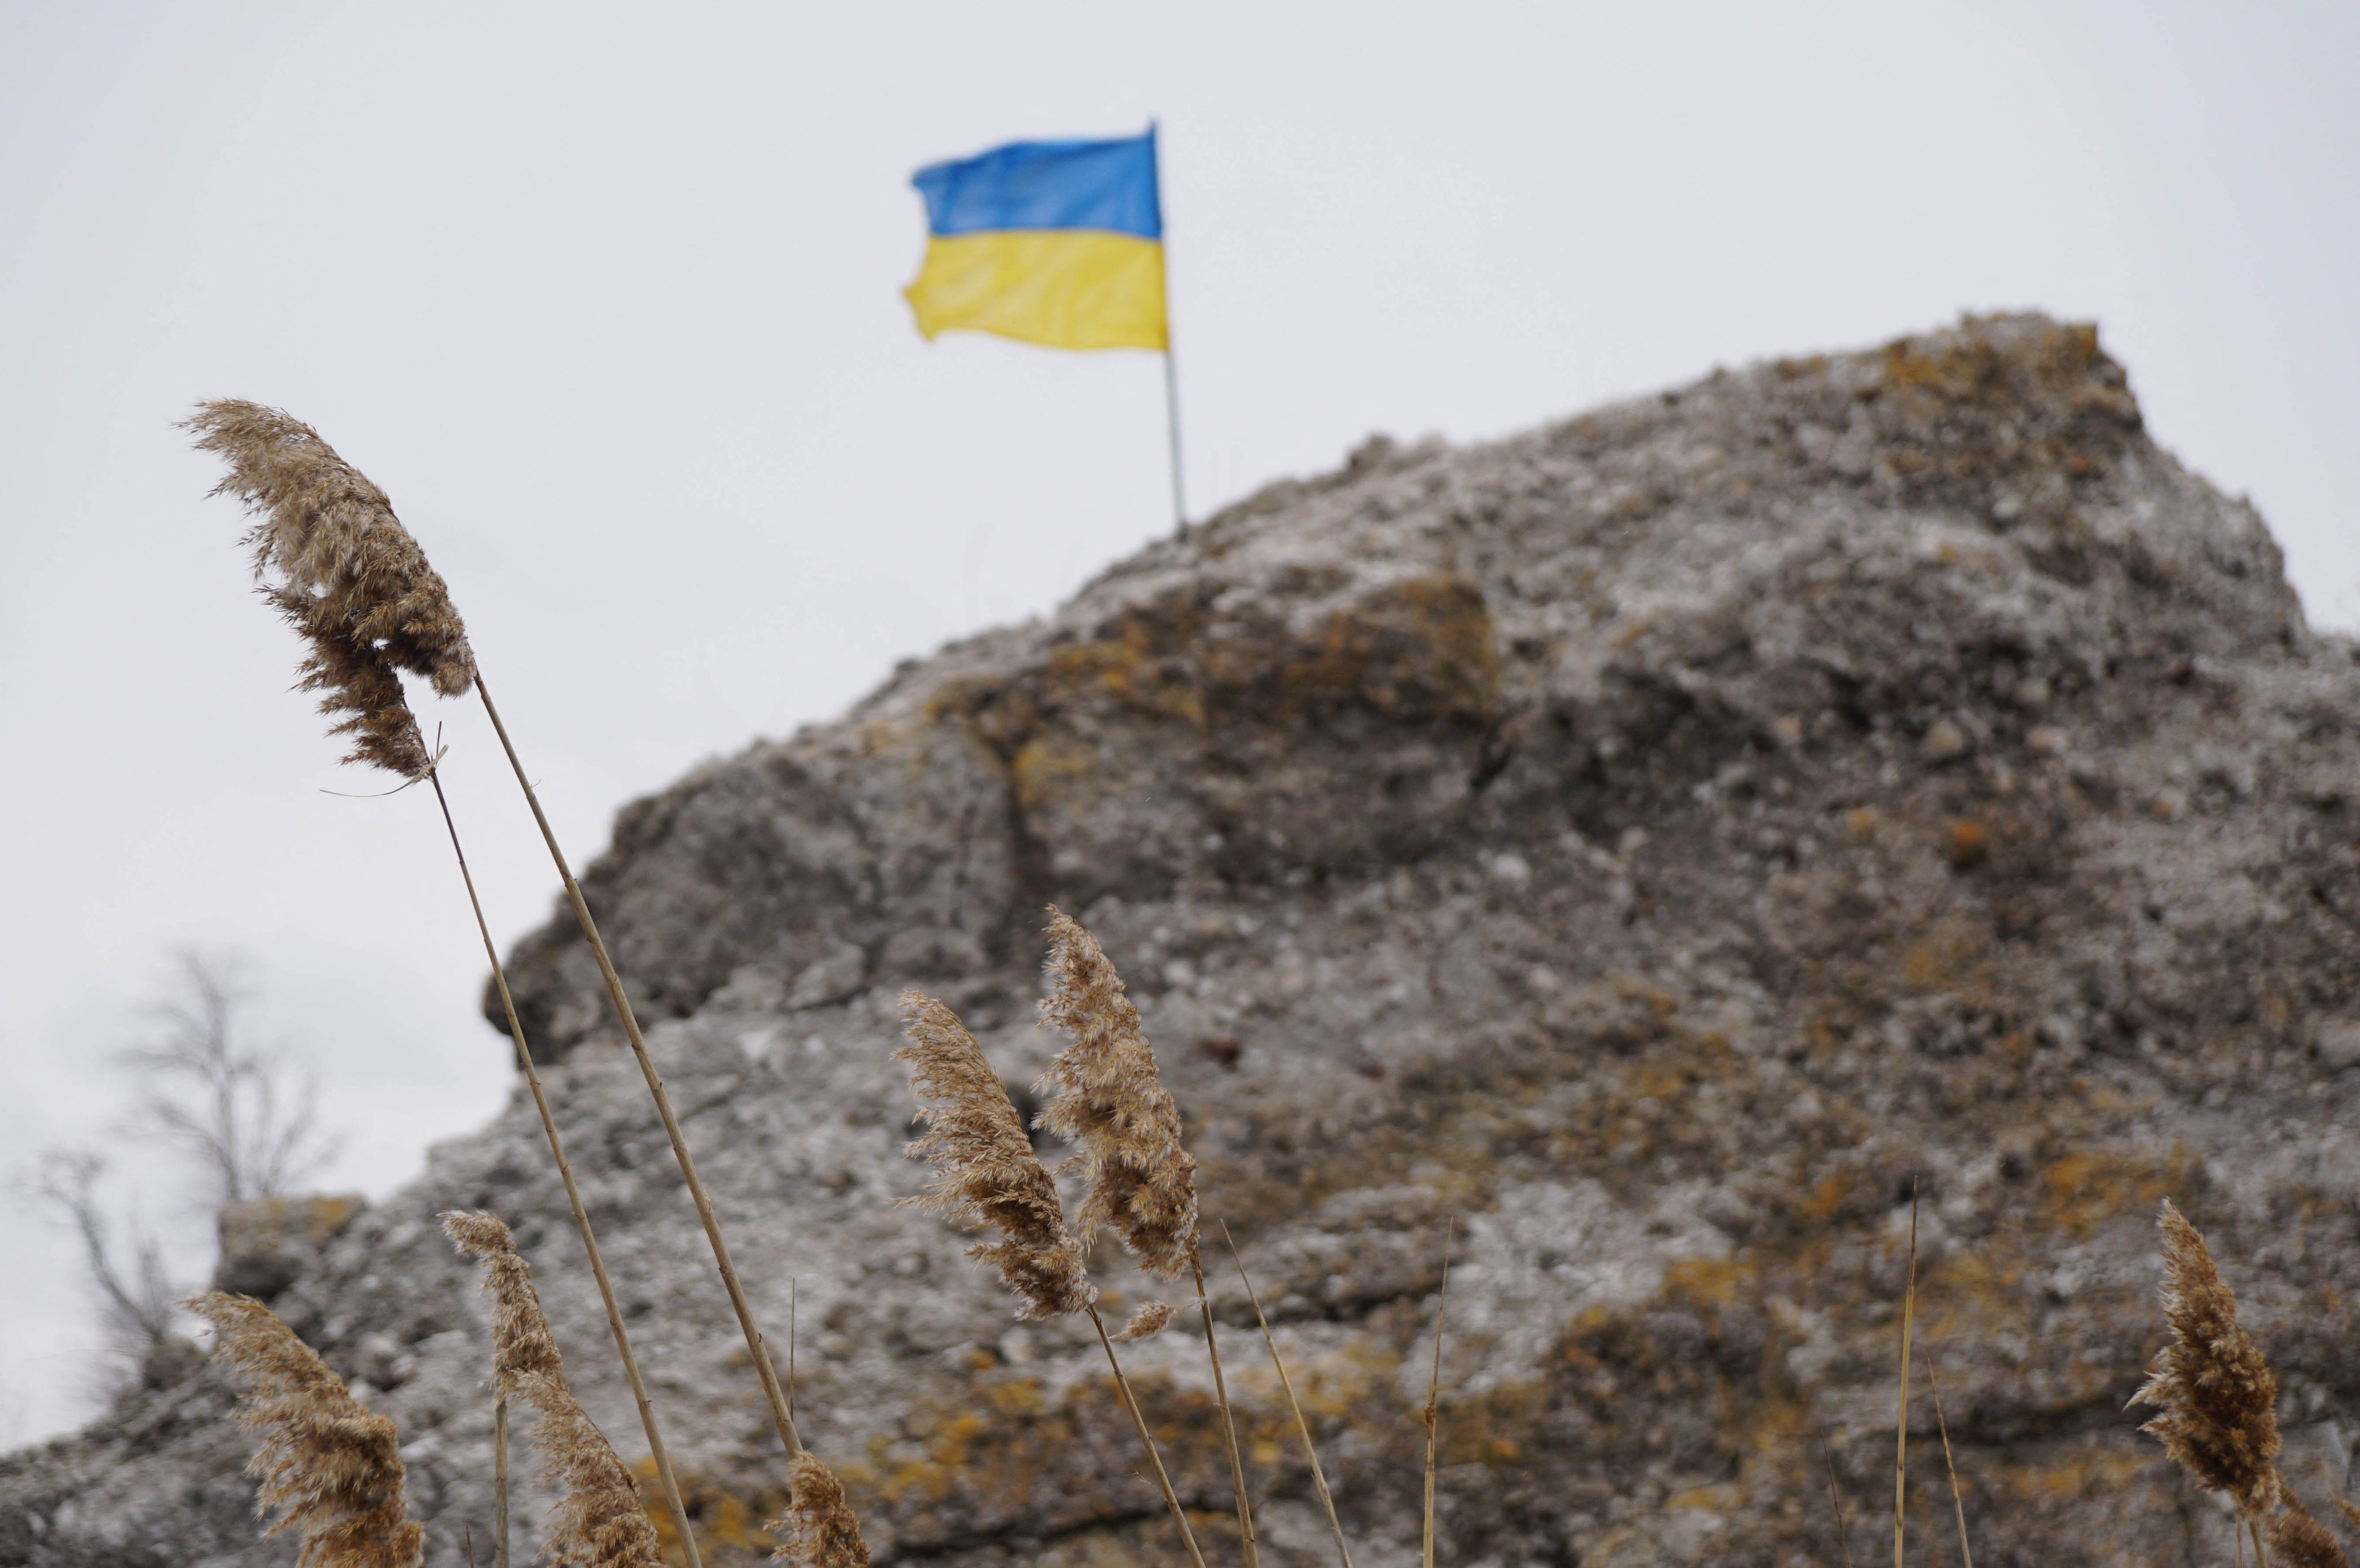 A Wagner csoport tagjai fejezhették le az ukrán katonát